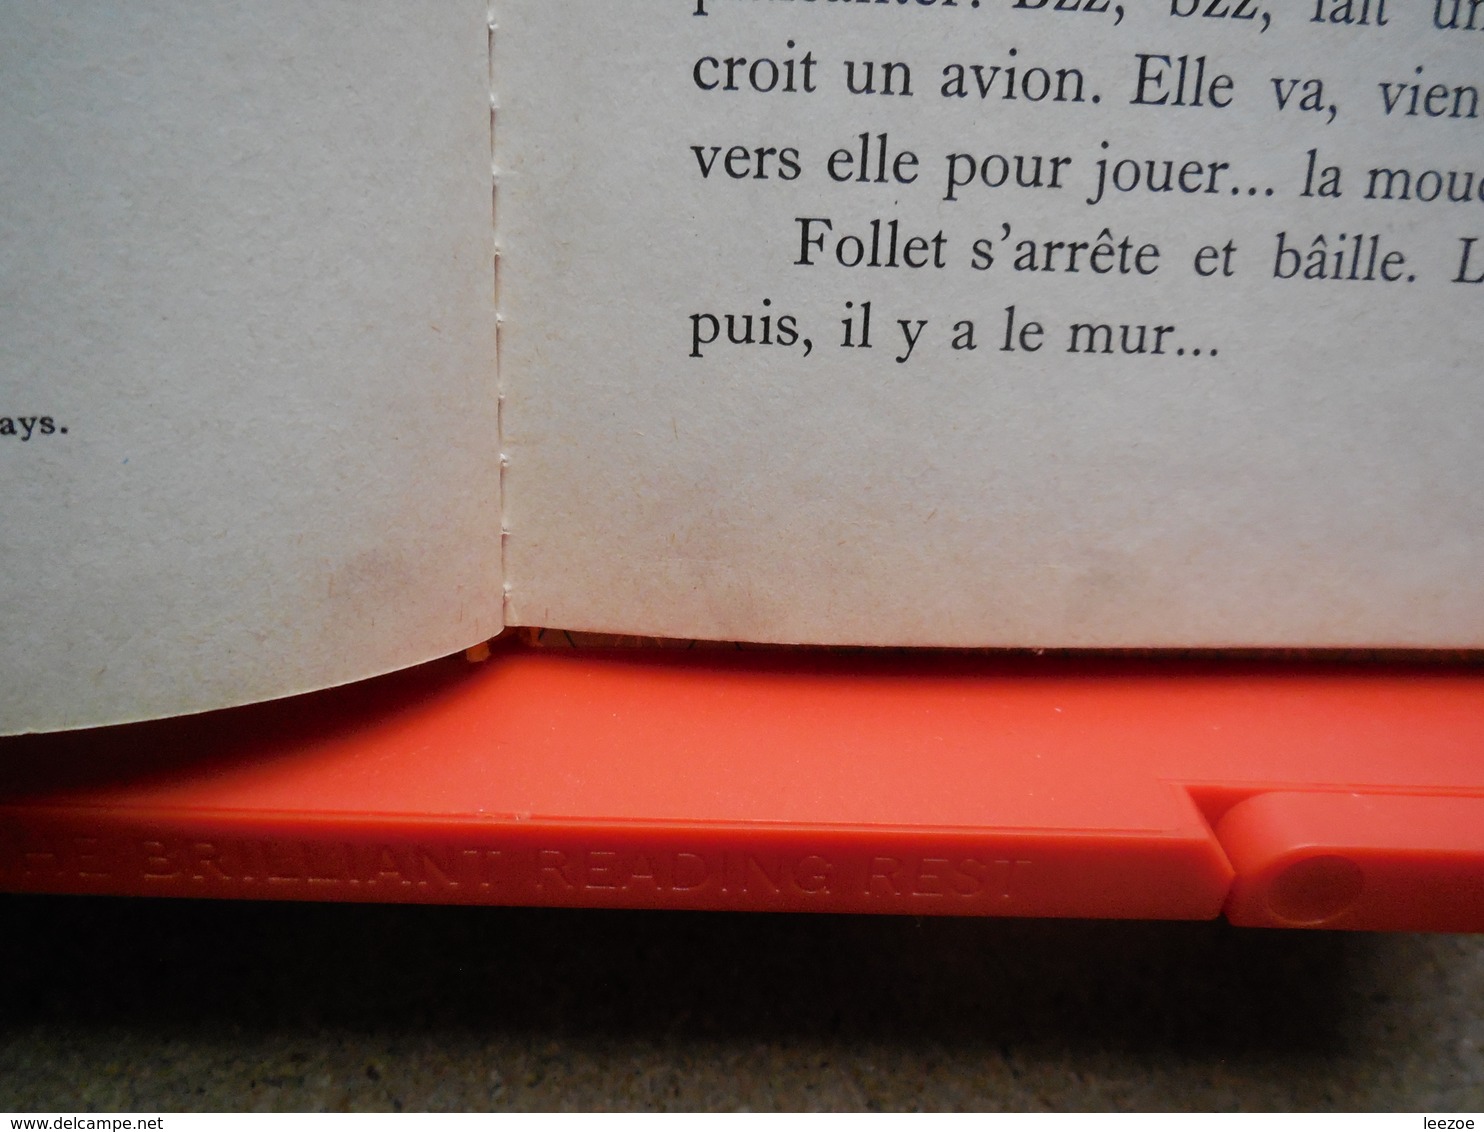 Collection Farandole Follet, Le Petit Chat. Texte De Lucienne Erville. Aquarelles De Marcel Marlier.....3A0420 - Casterman